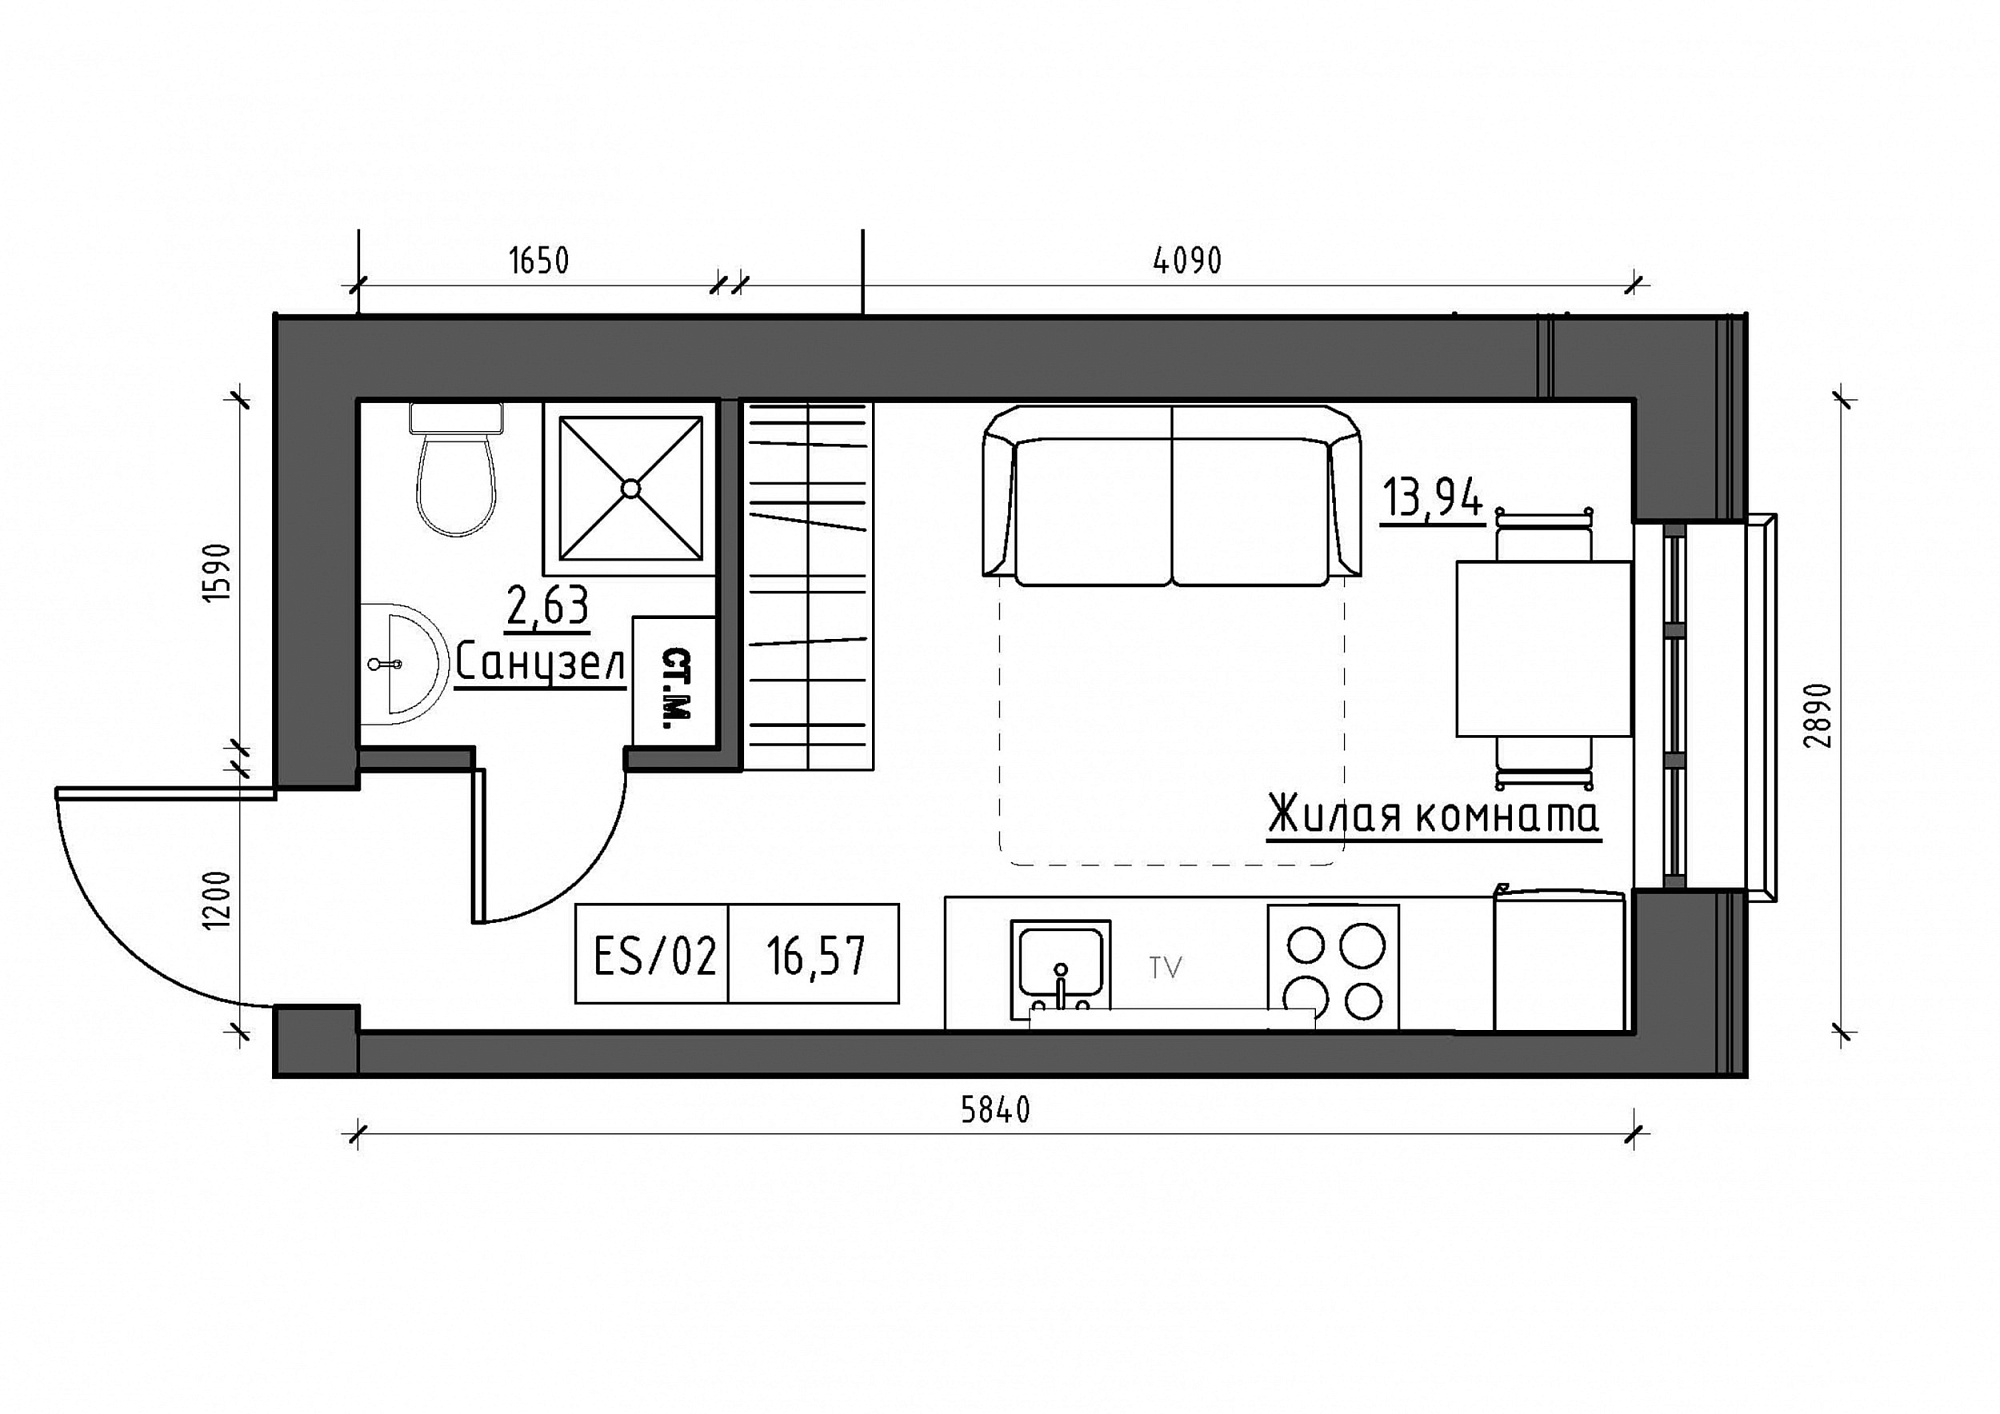 Планування Smart-квартира площею 16.57м2, KS-011-03/0005.